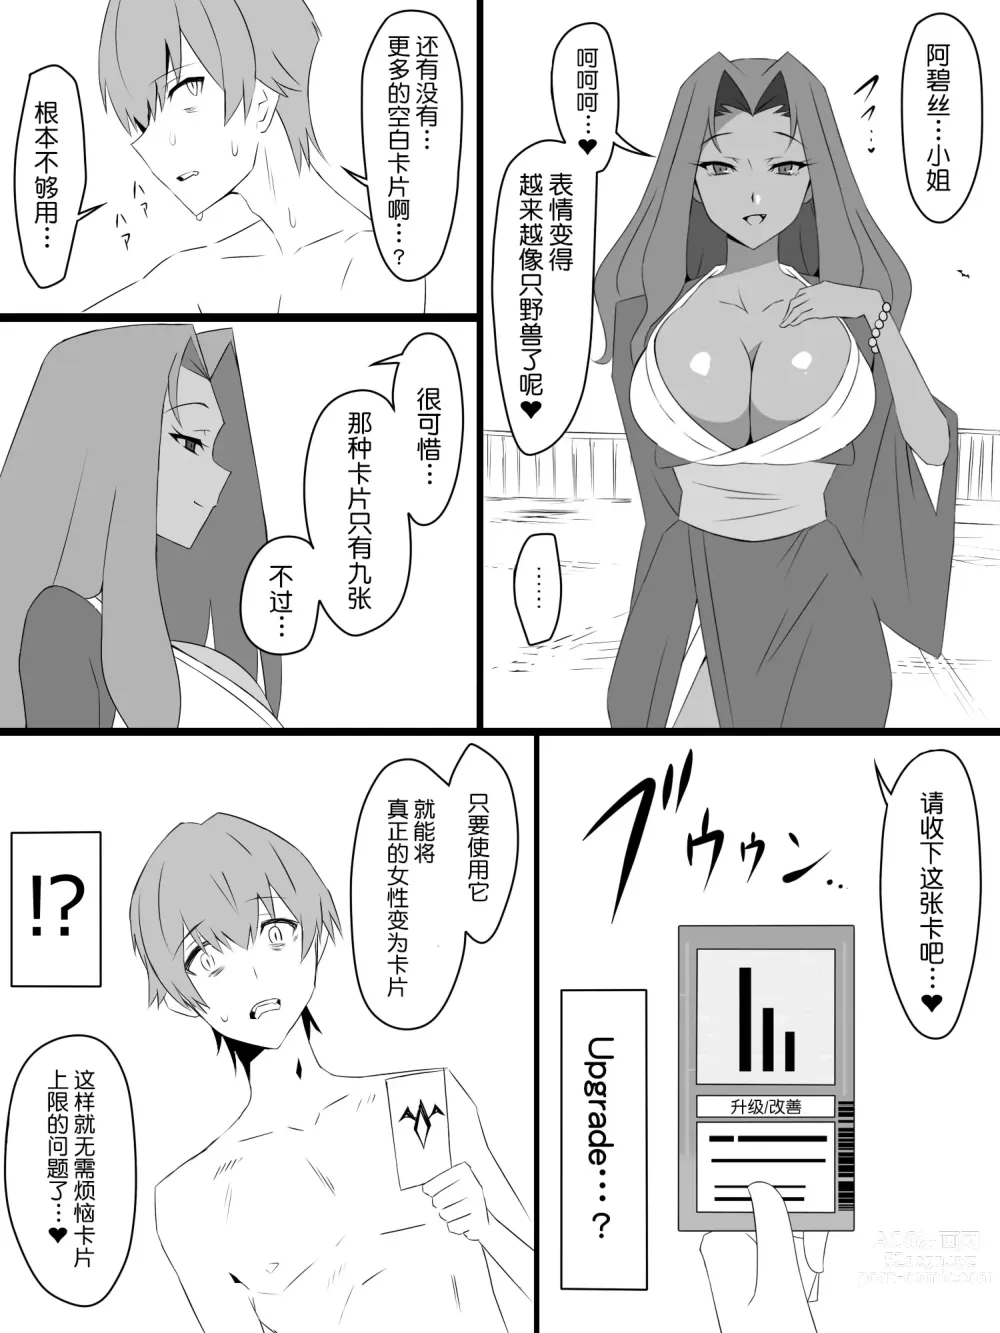 Page 34 of doujinshi Shoukanjuu DX DeliHealizer